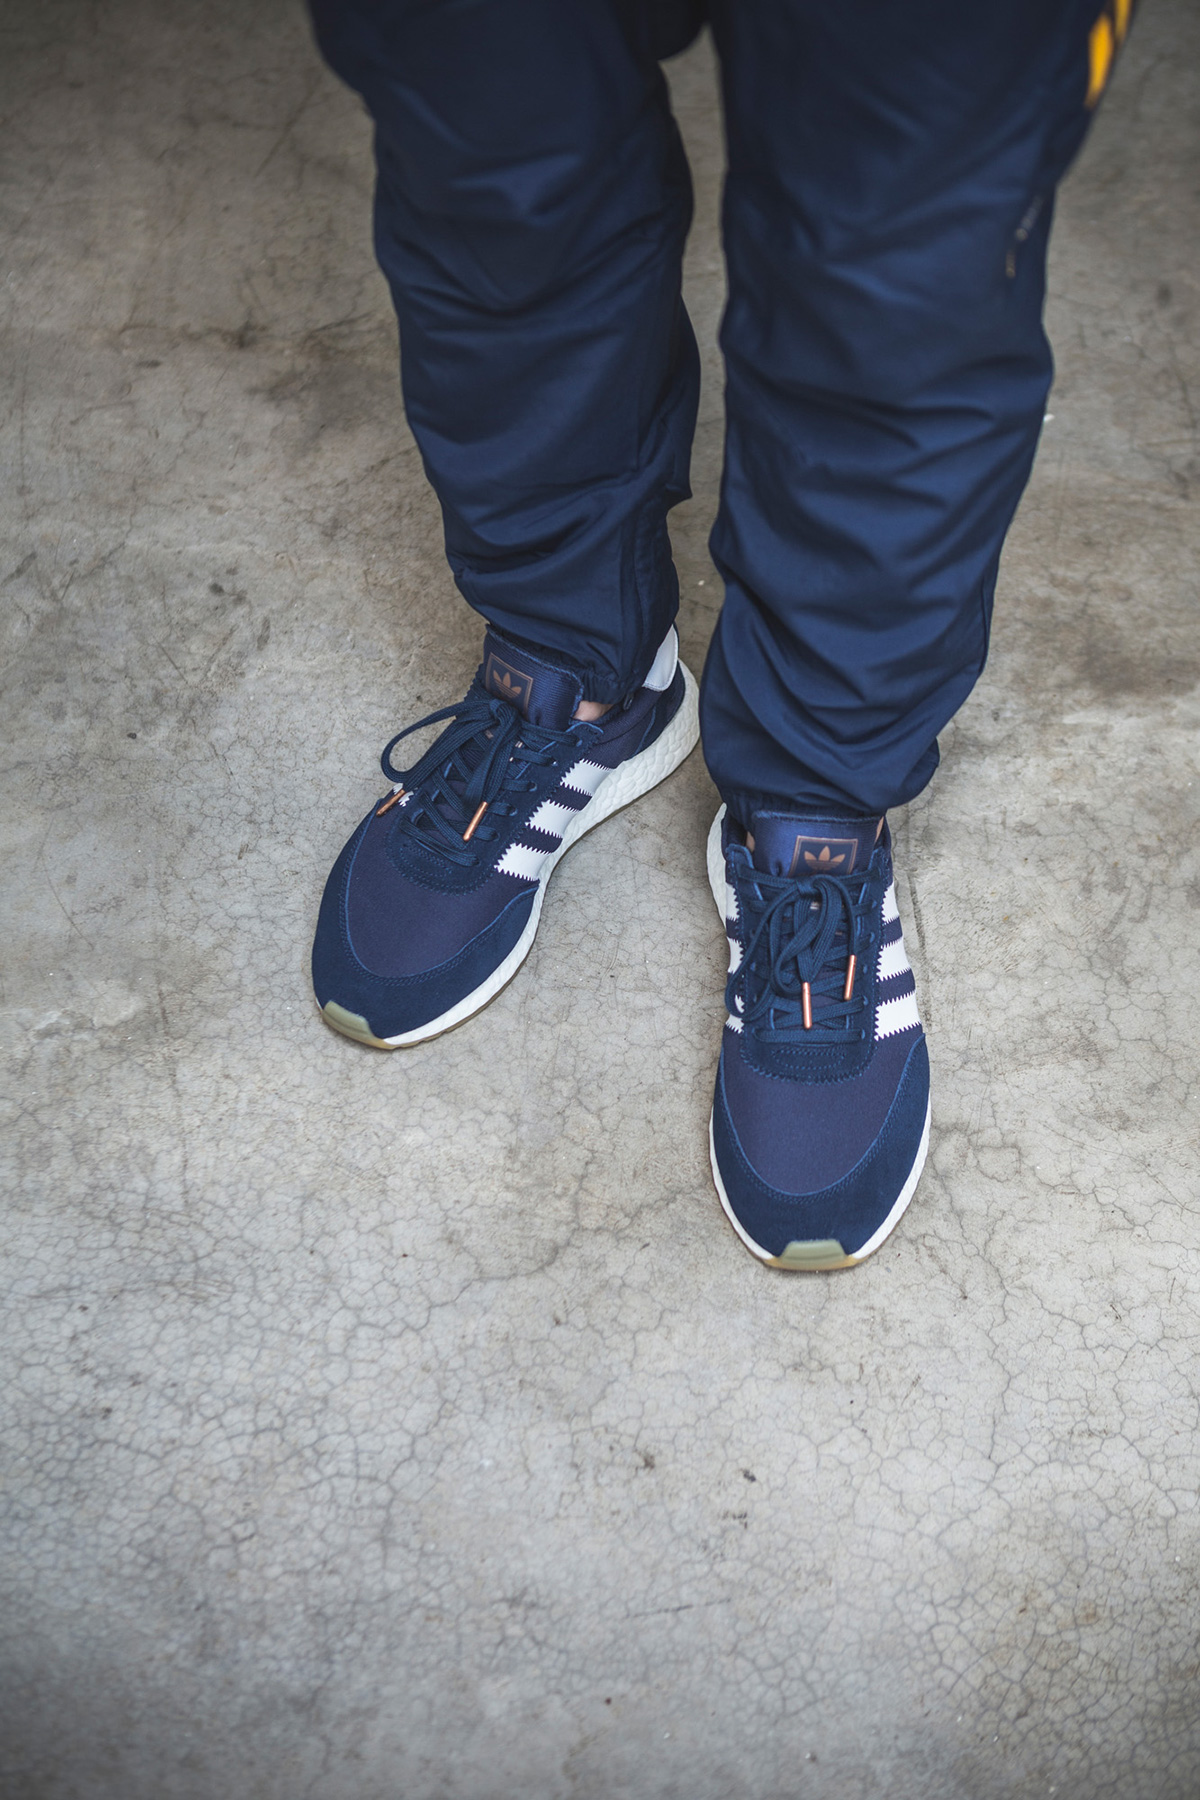 아디다스 오리지널스 이니키 러너 부스트 착샷 by SneakersBR (adidas Iniki Runner Boost on feet by SneakersBR) 13